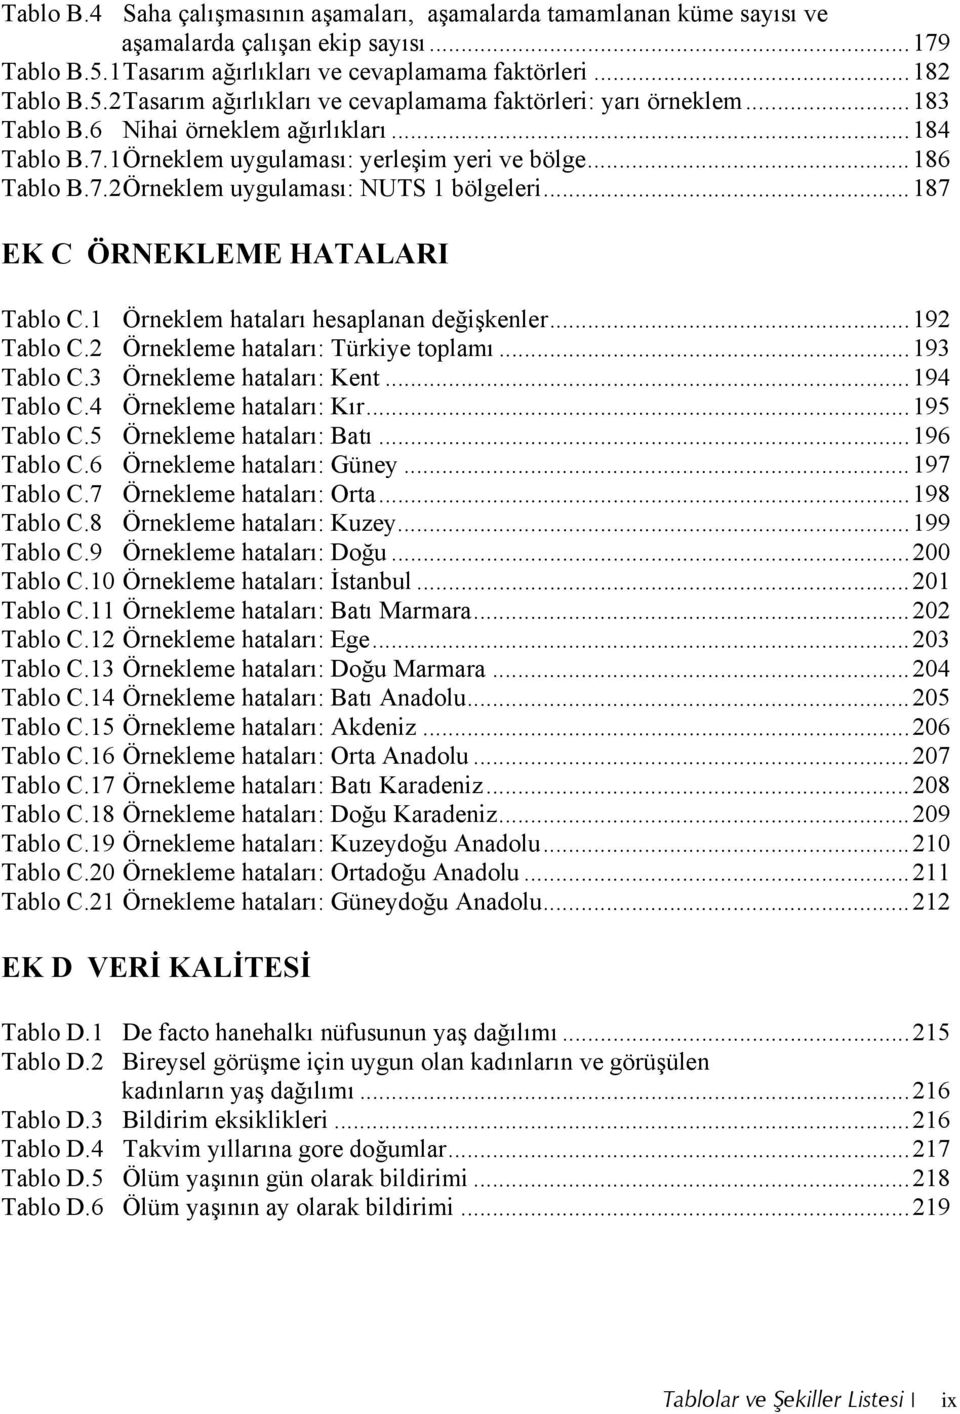 1 Örneklem hataları hesaplanan değişkenler...192 Tablo C.2 Örnekleme hataları: Türkiye toplamı...193 Tablo C.3 Örnekleme hataları: Kent...194 Tablo C.4 Örnekleme hataları: Kır...195 Tablo C.